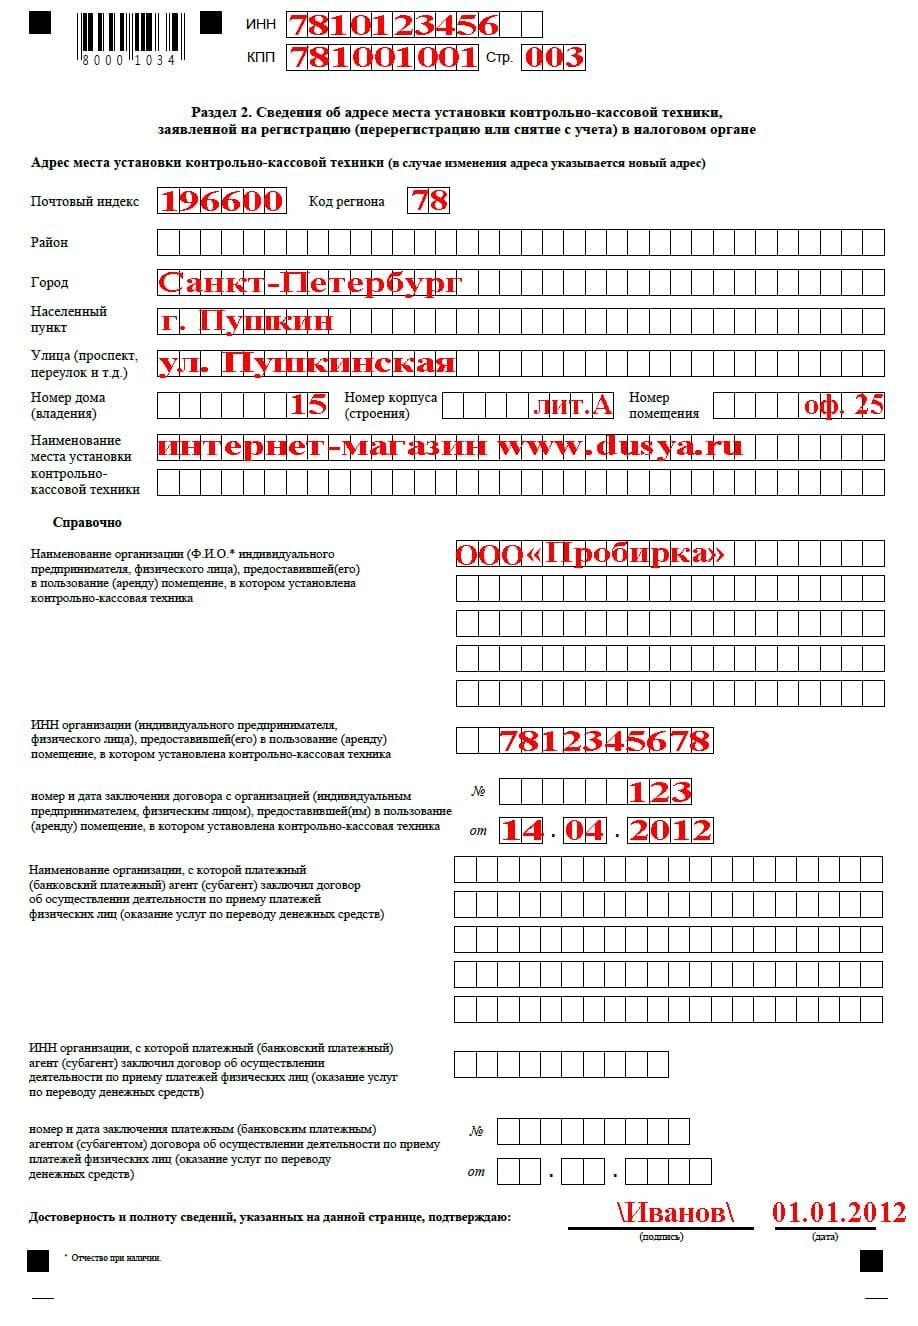 Страница 3 заявления о регистрации ККМ